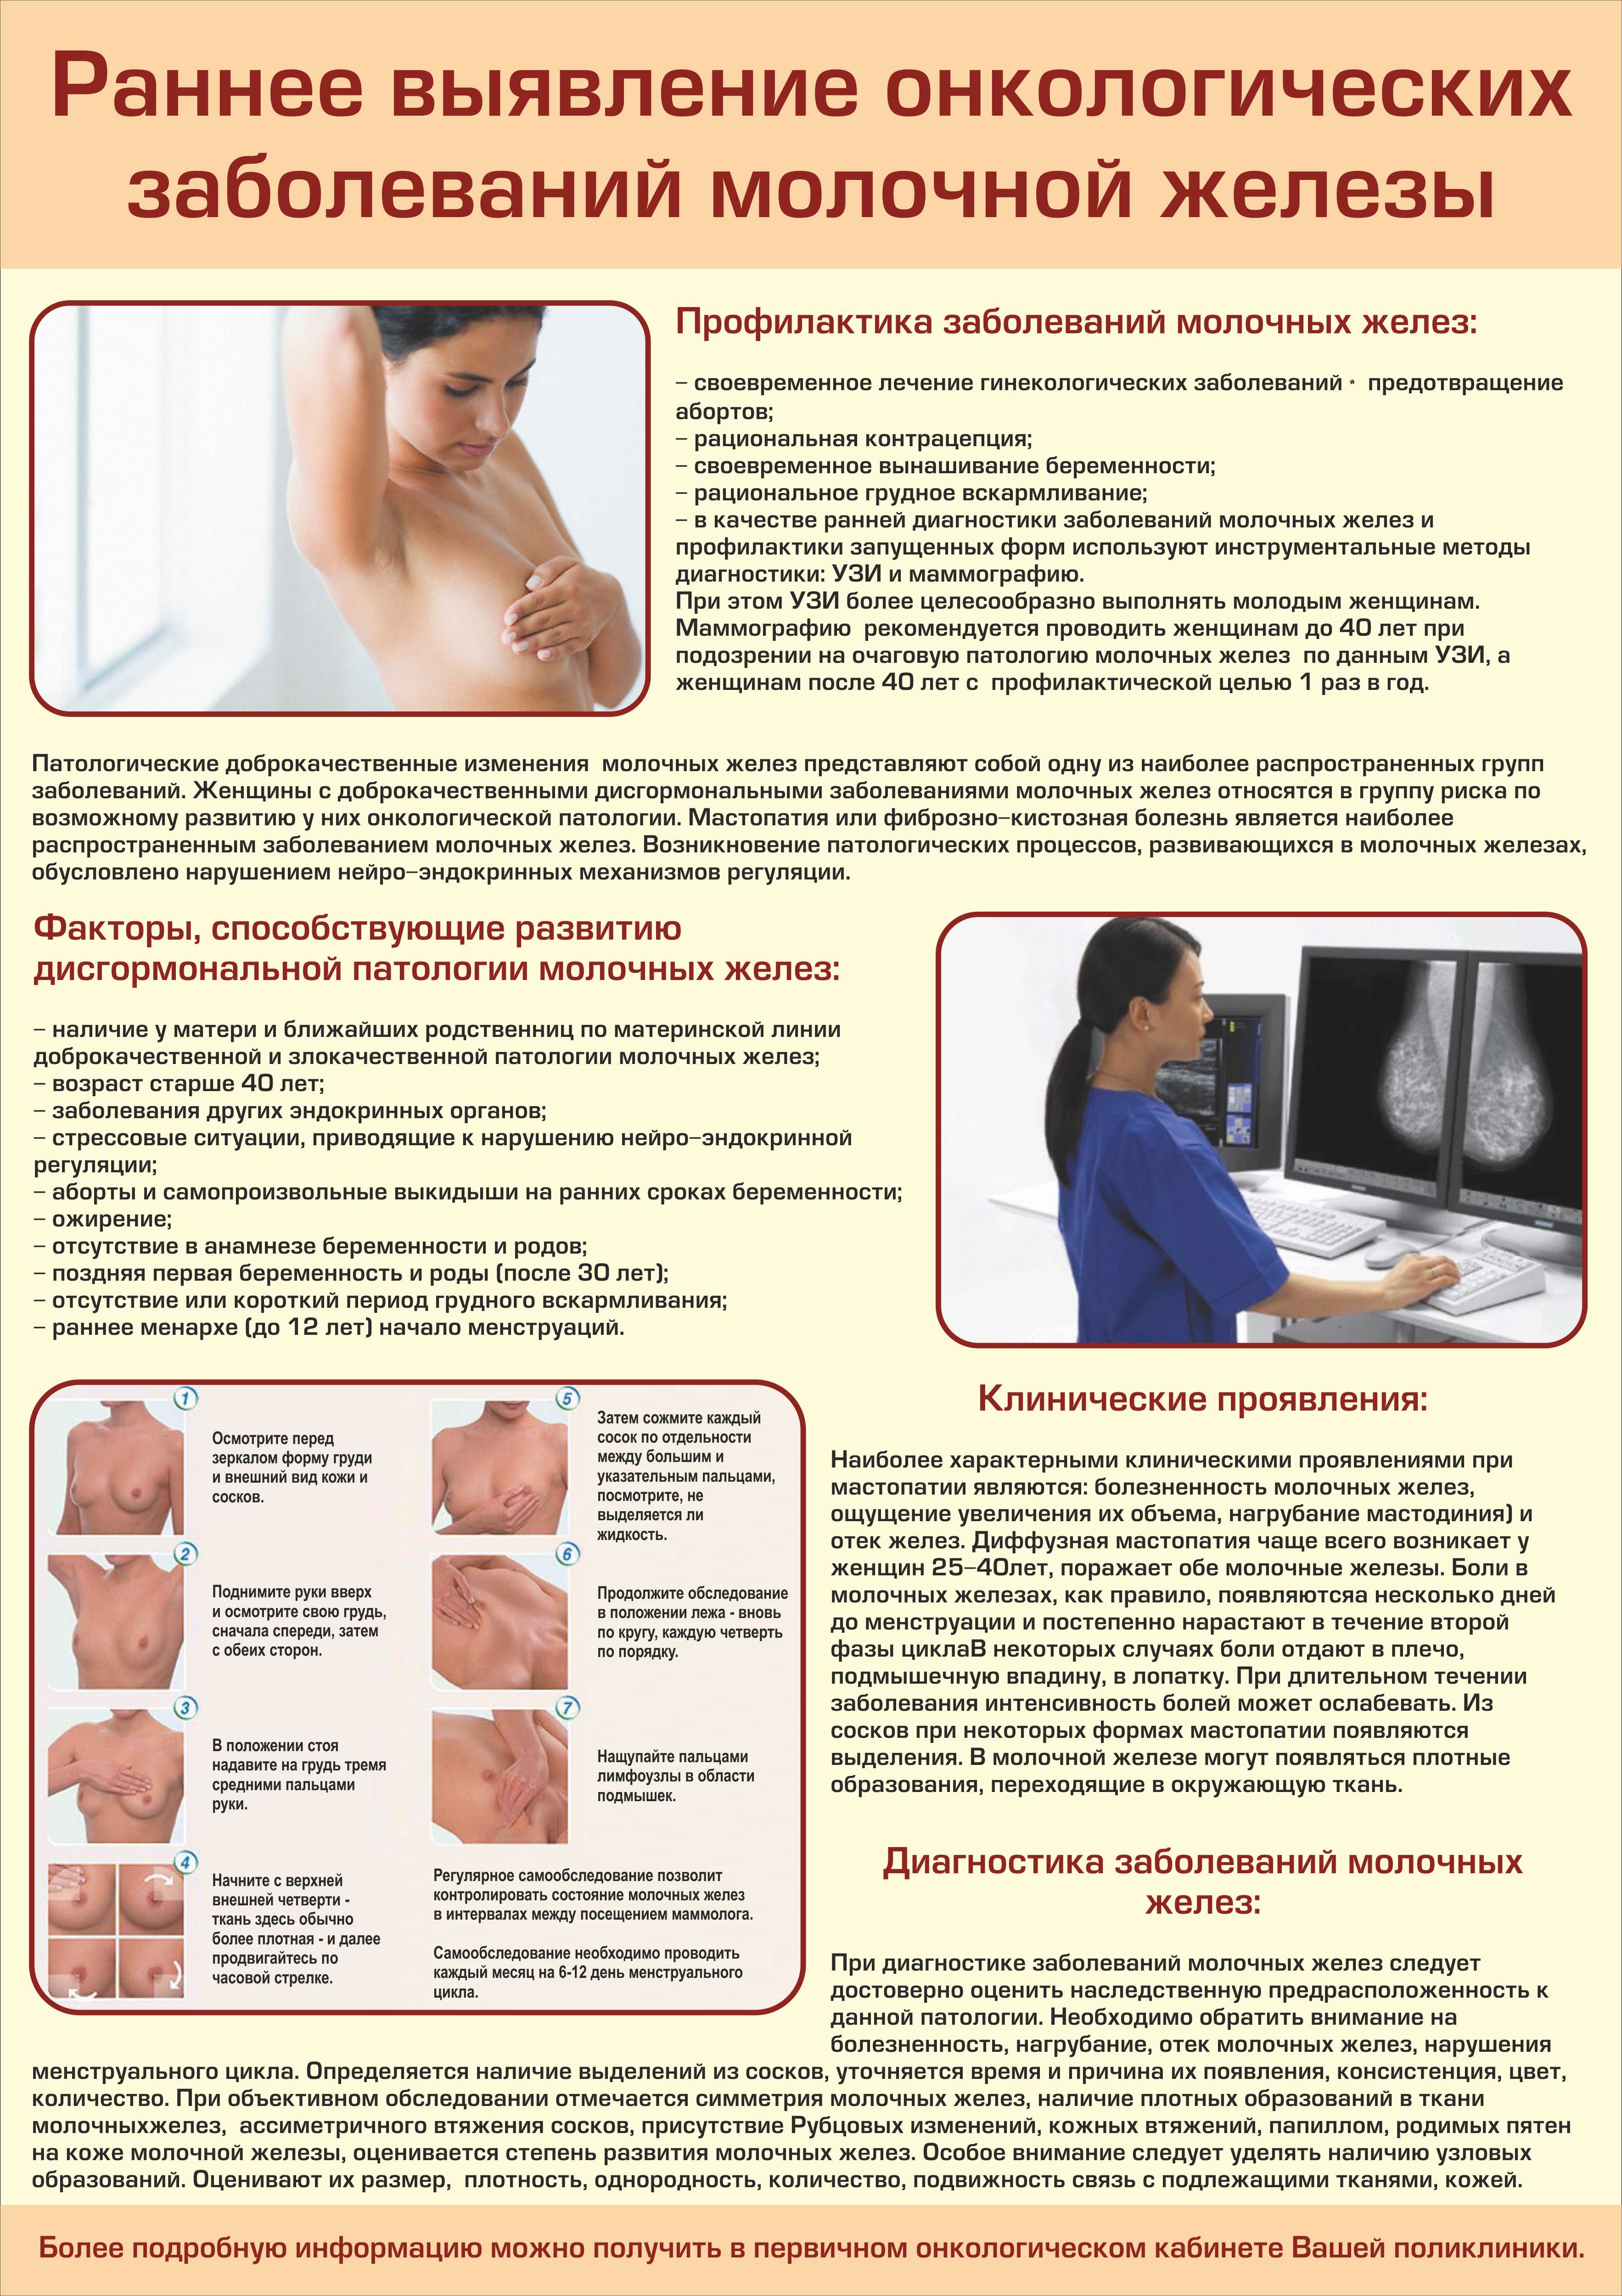 Виды груди у женщин: какие бывают формы и их классификация | parnas42.ru